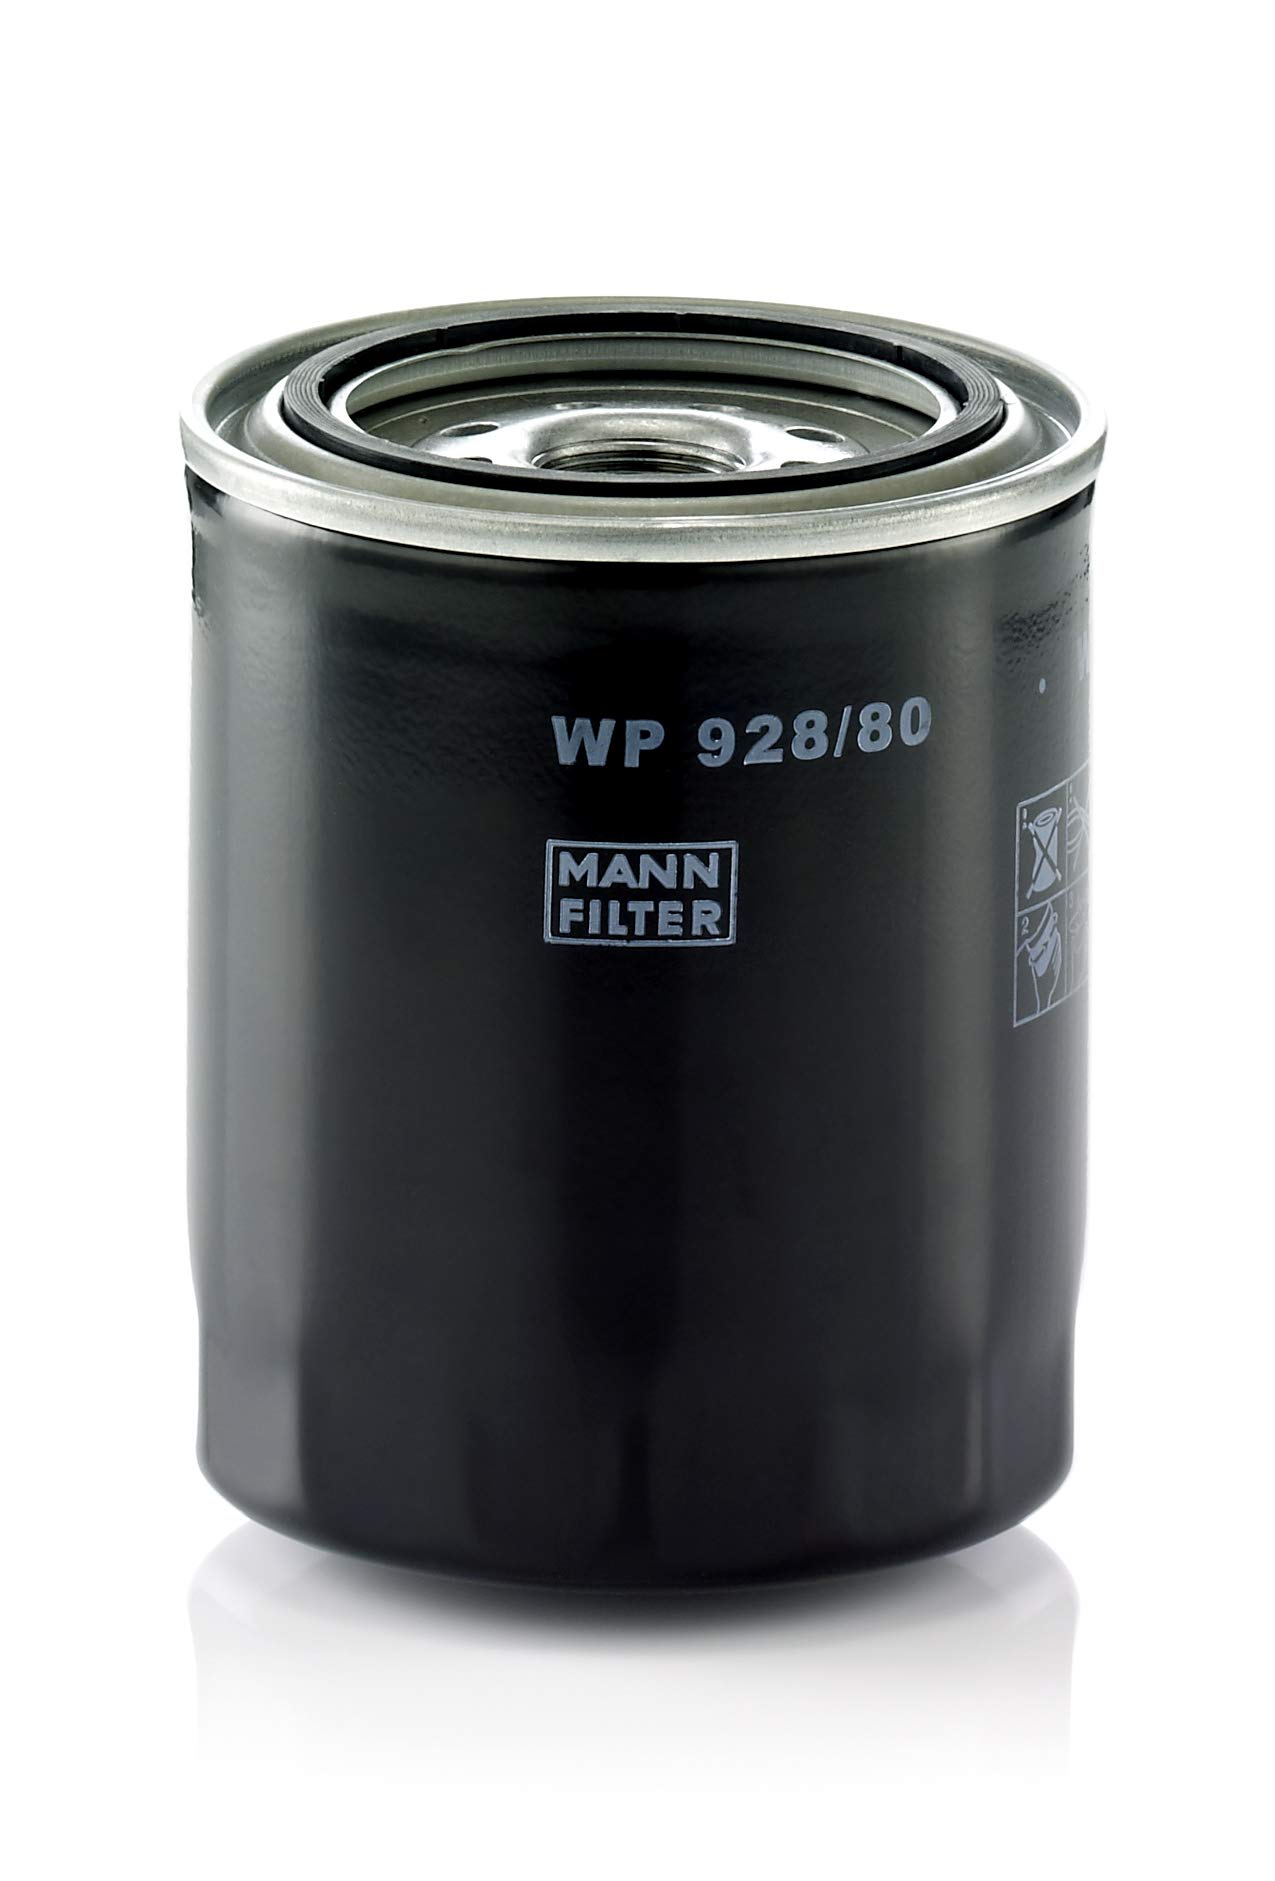 MANN-FILTER WP 928/80 - Wechselfilter für den Öl-Nebenstrom oder als Kombination Haupt-Nebenstom Ölfilter – Für PKW von MANN-FILTER